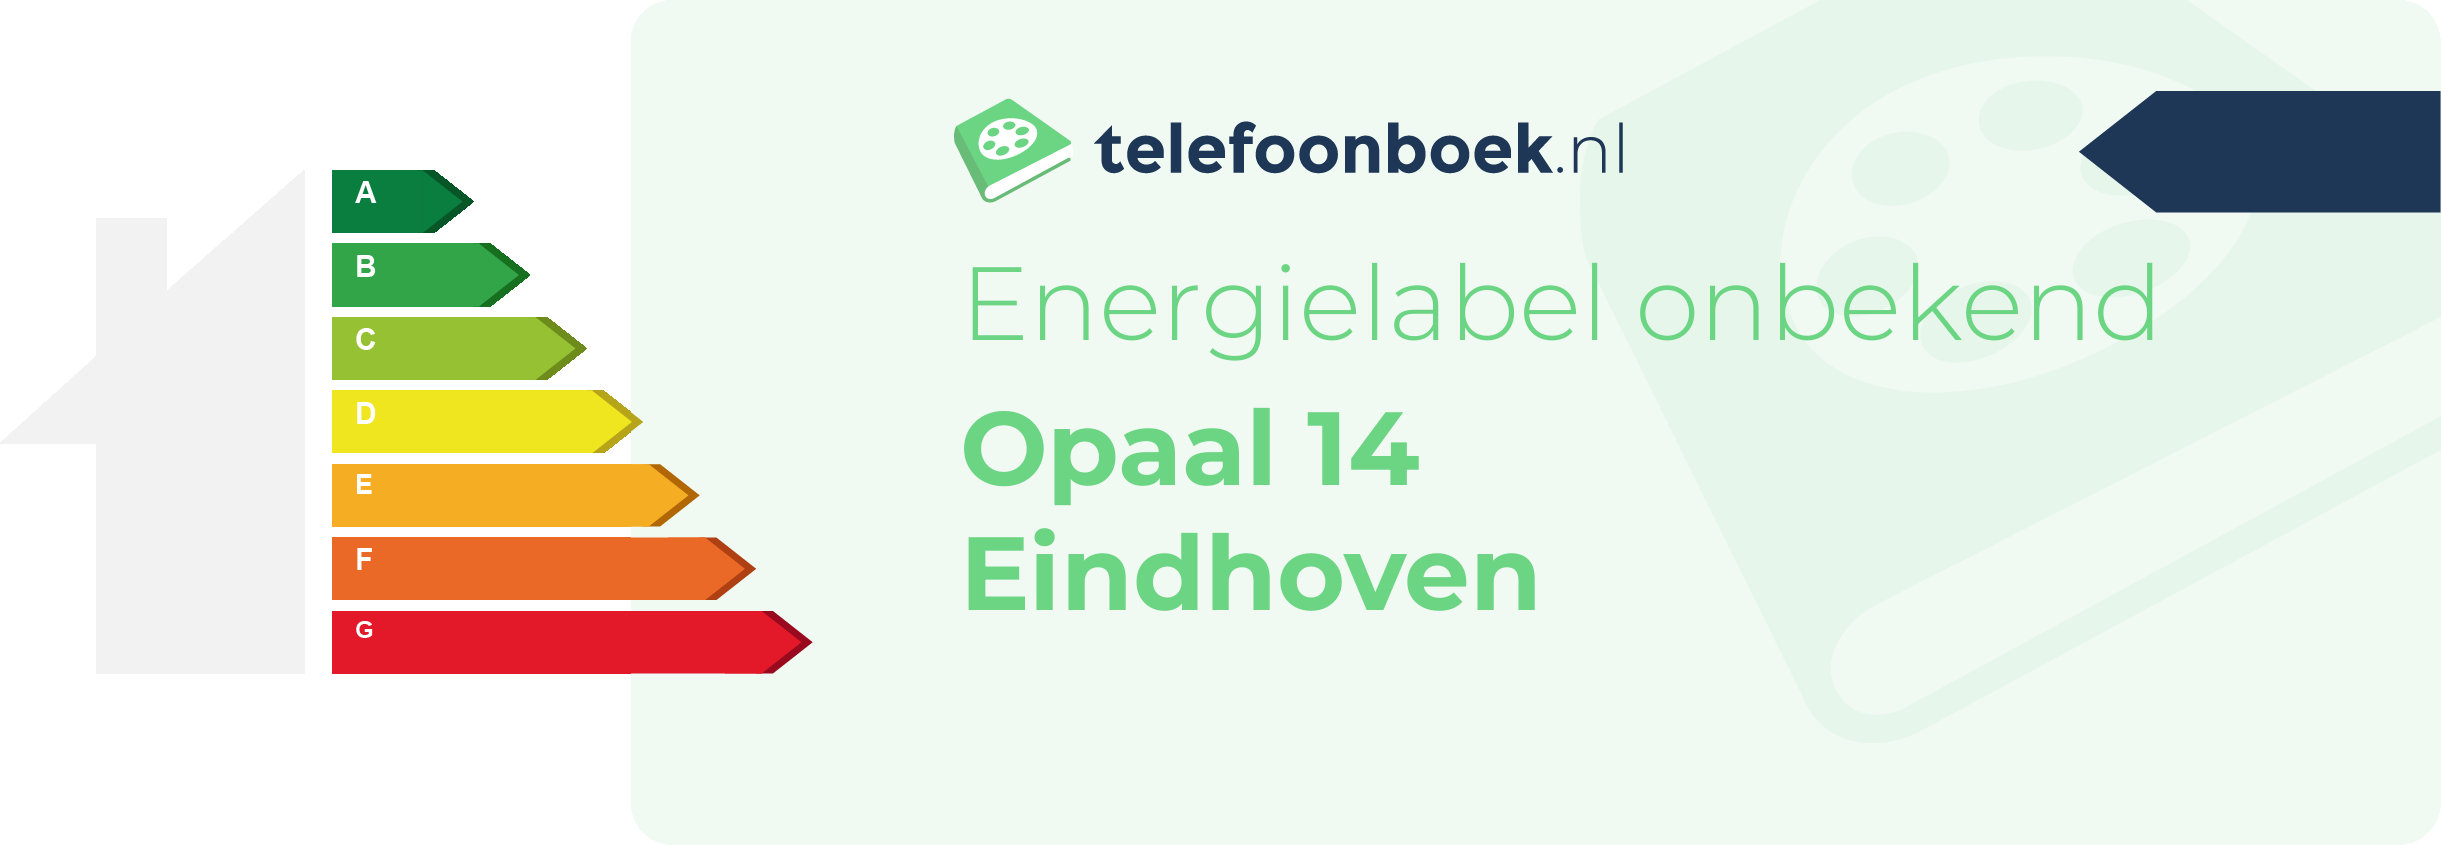 Energielabel Opaal 14 Eindhoven